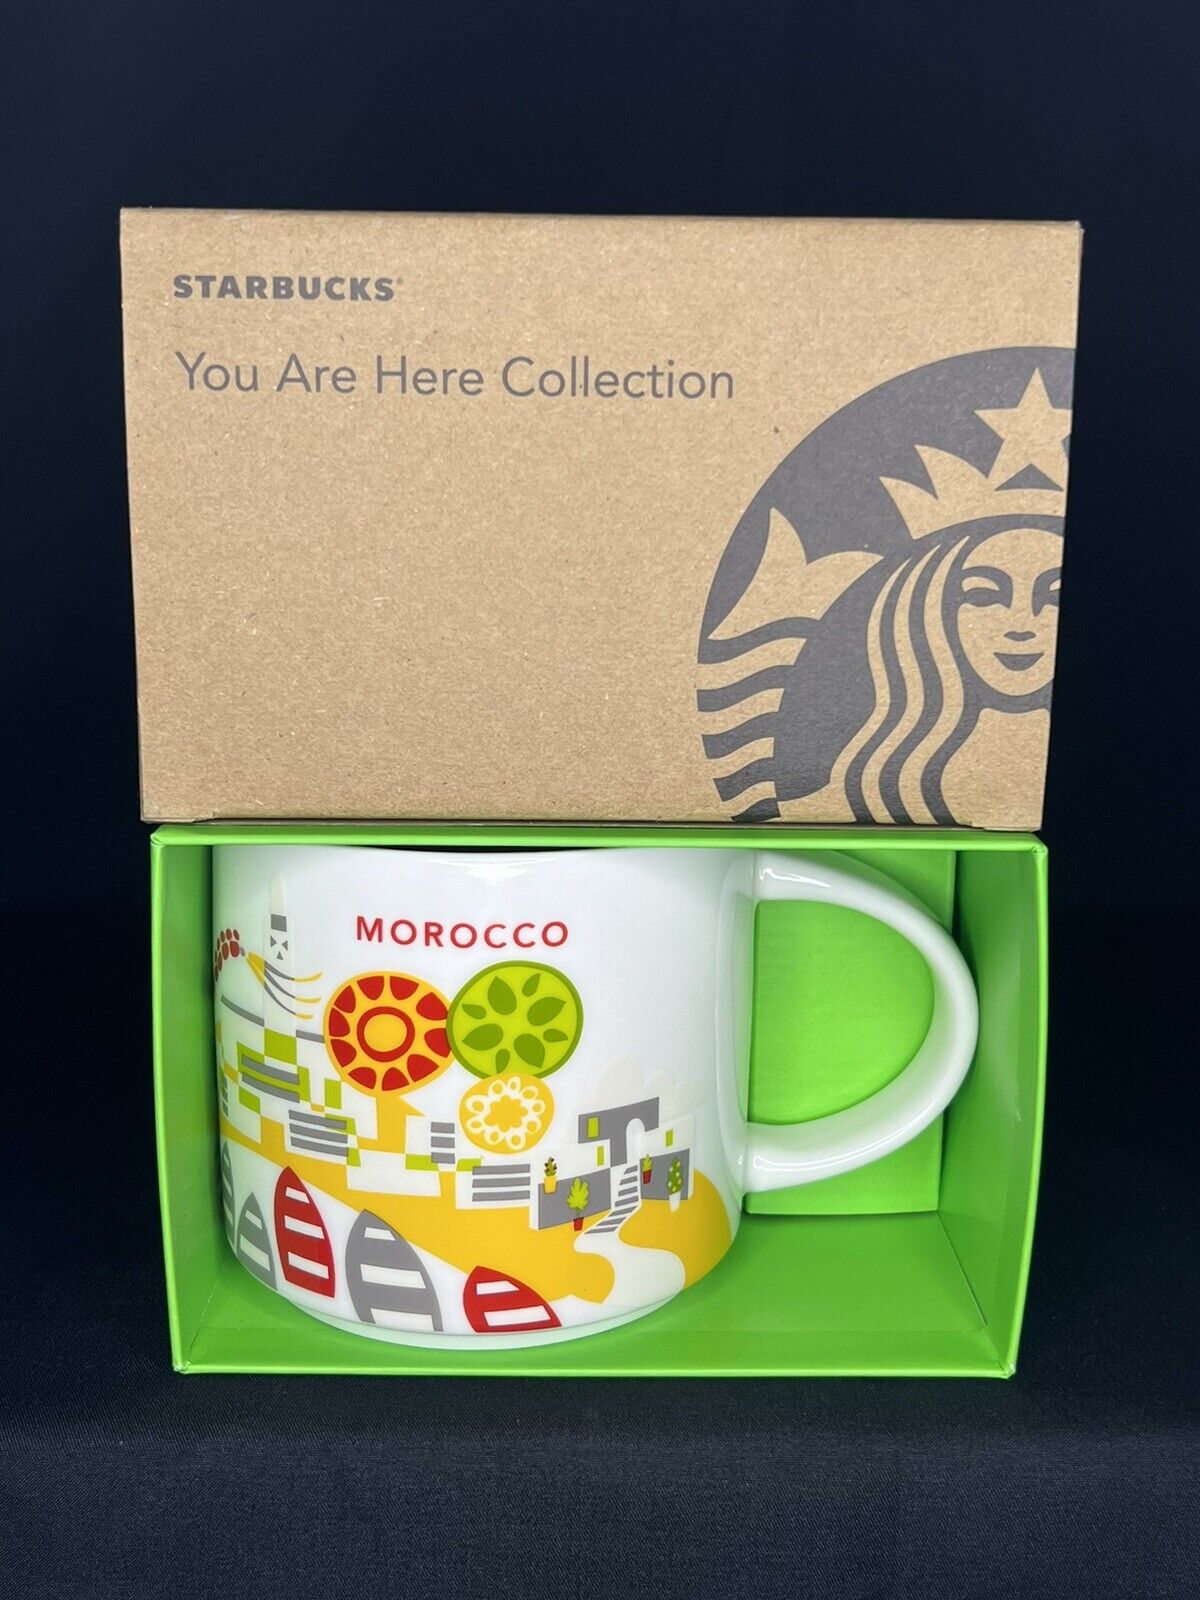 RARE Starbucks Morocco You Are Here Collection Mug 14oz 414mL Brand New with Box